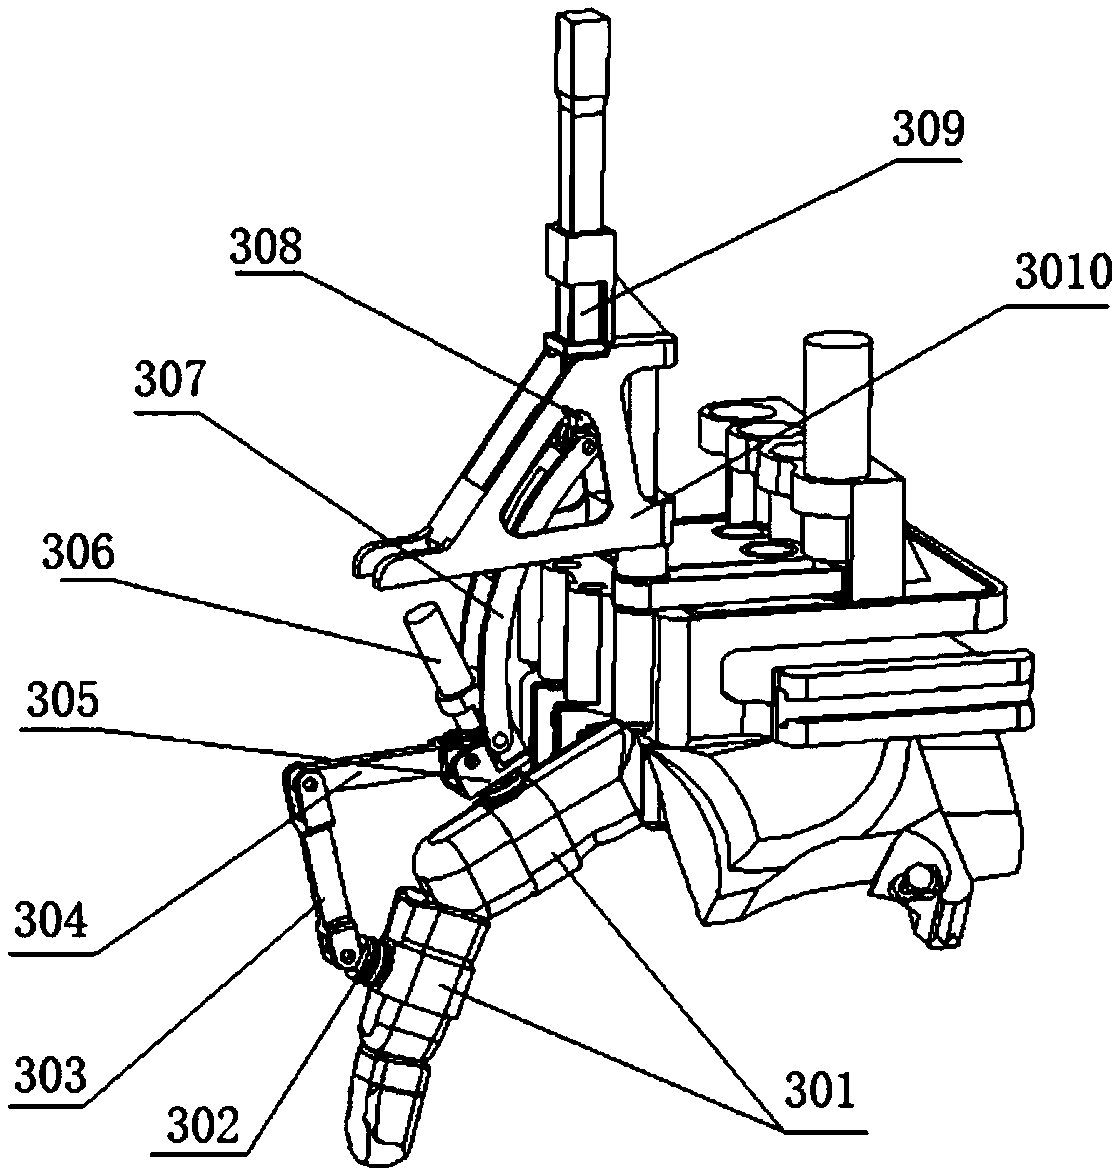 Exoskeleton type 15-degree-of-freedom rehabilitation manipulator mechanism